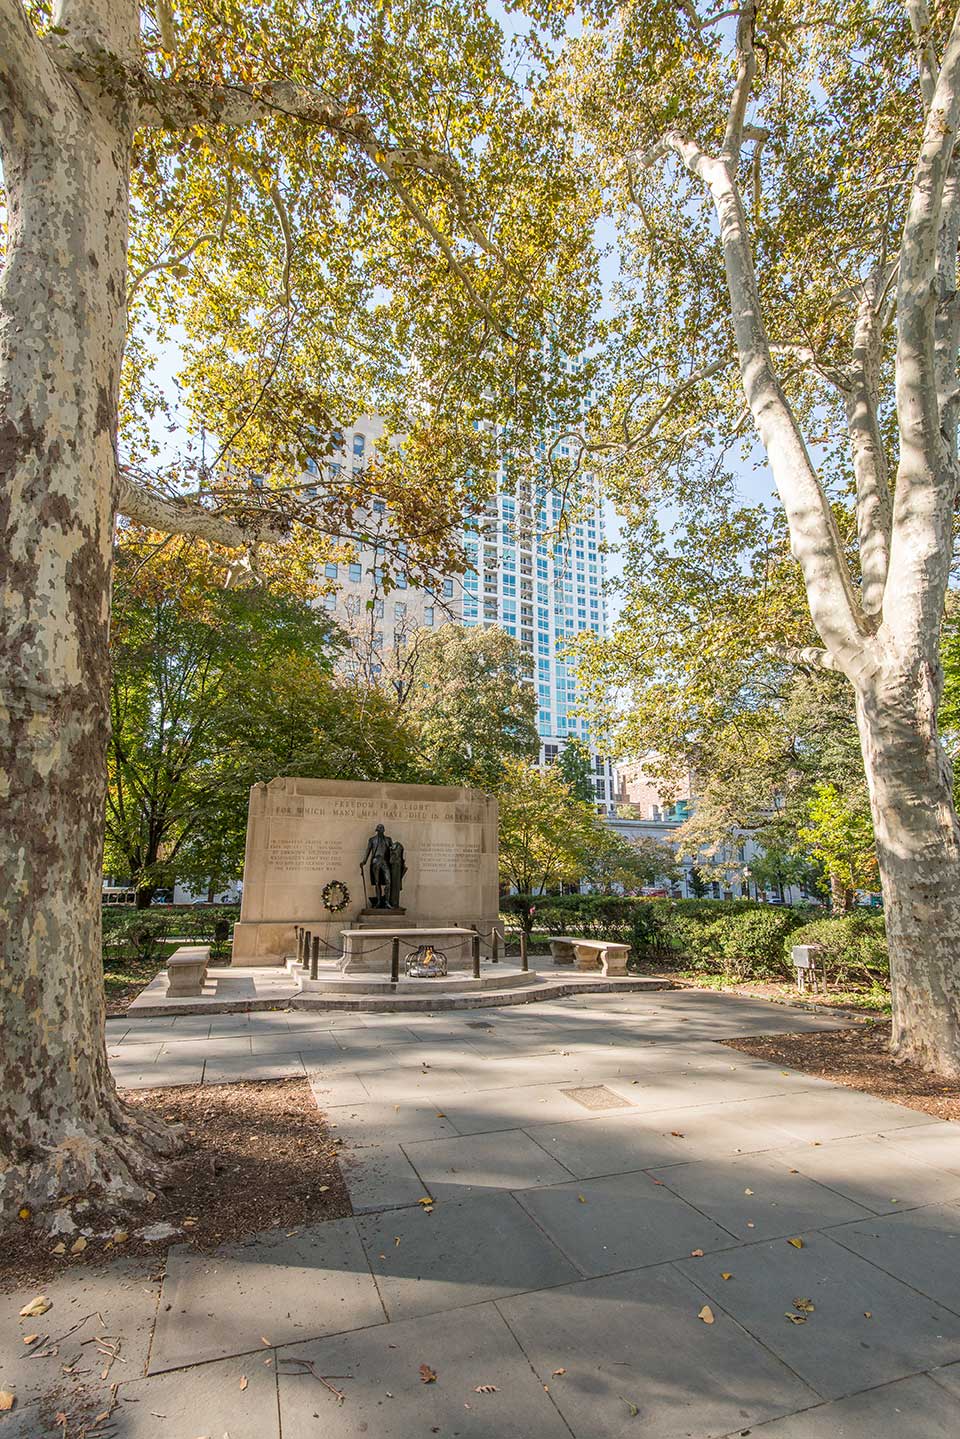 Monument in park in Old City, Philadelphia, PA